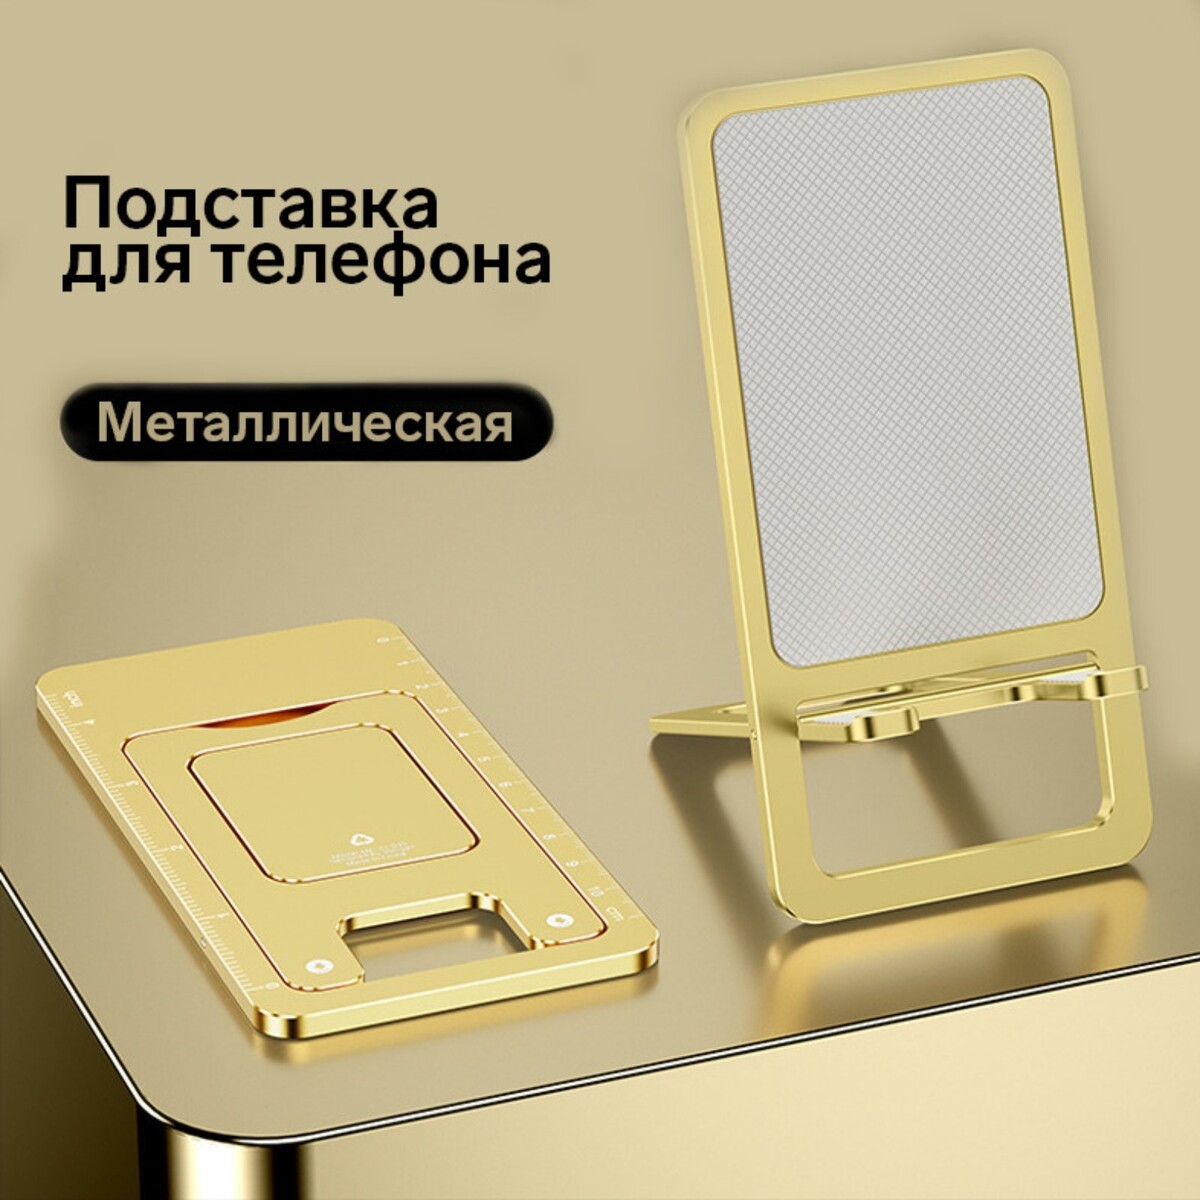 Подставка для телефона, складная, металлическая, прорезиненная, желтая